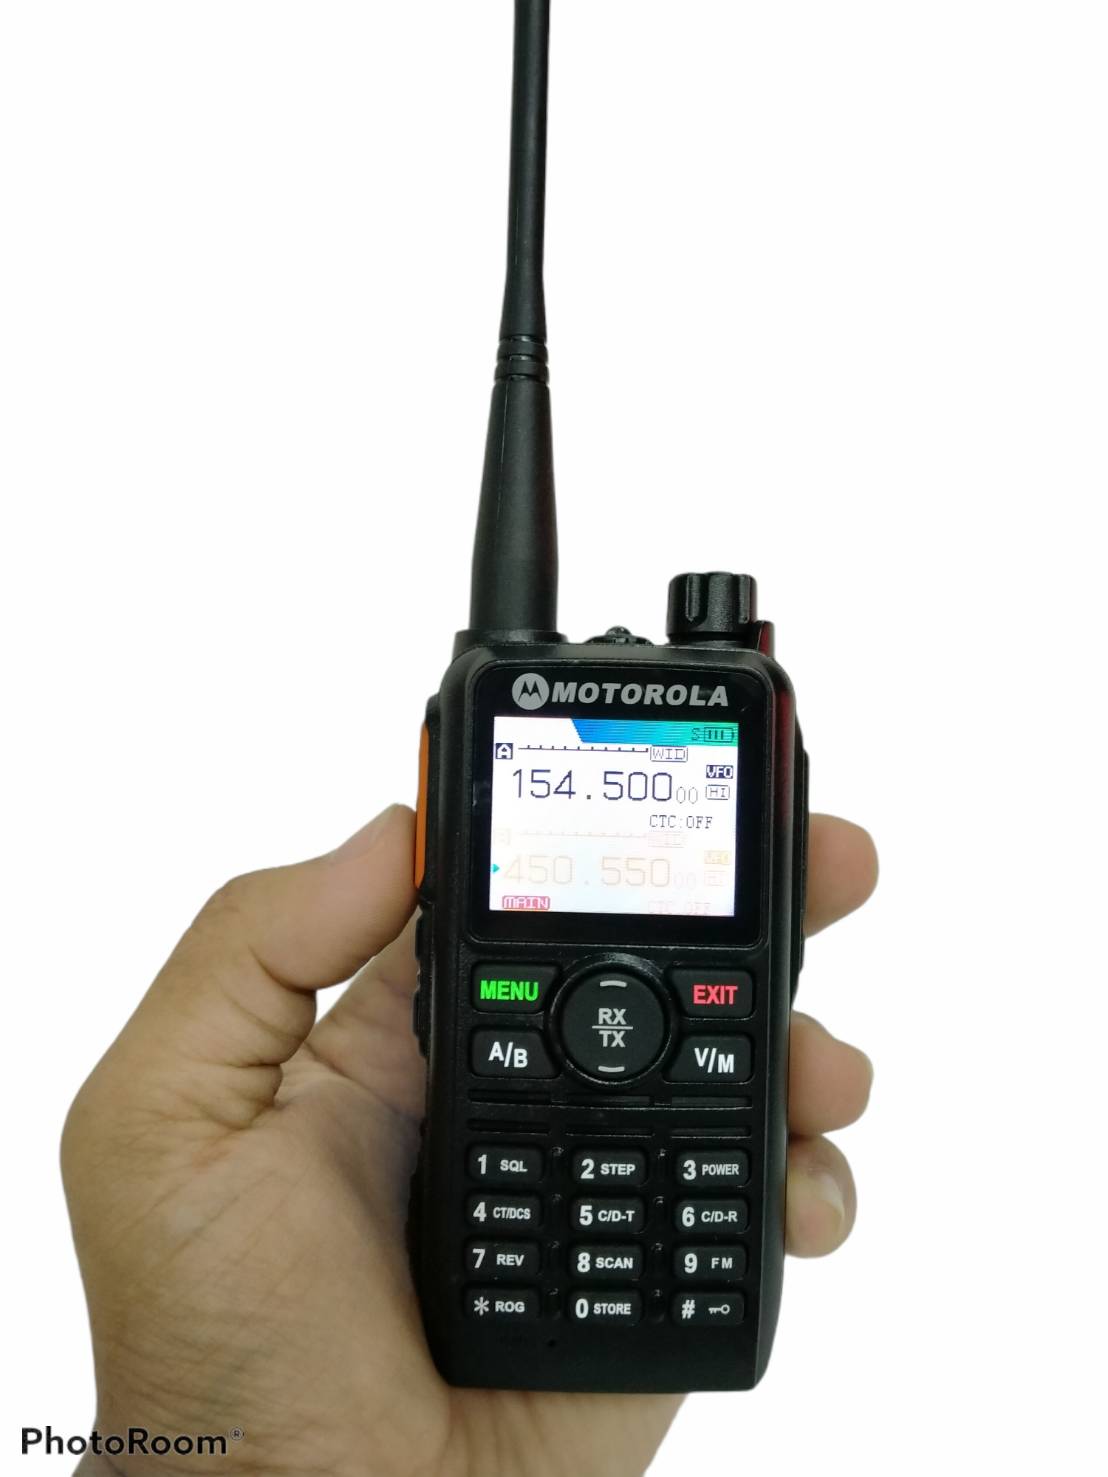 วิทยุสื่อสาร MOTOROLA รุ่น GP-888 หน้าจอสี โชว์พร้อมกัน2ช่อง ระบบ VHF/FM 136-174MHz 400-470MHZ กำลังส่ง 5-8W